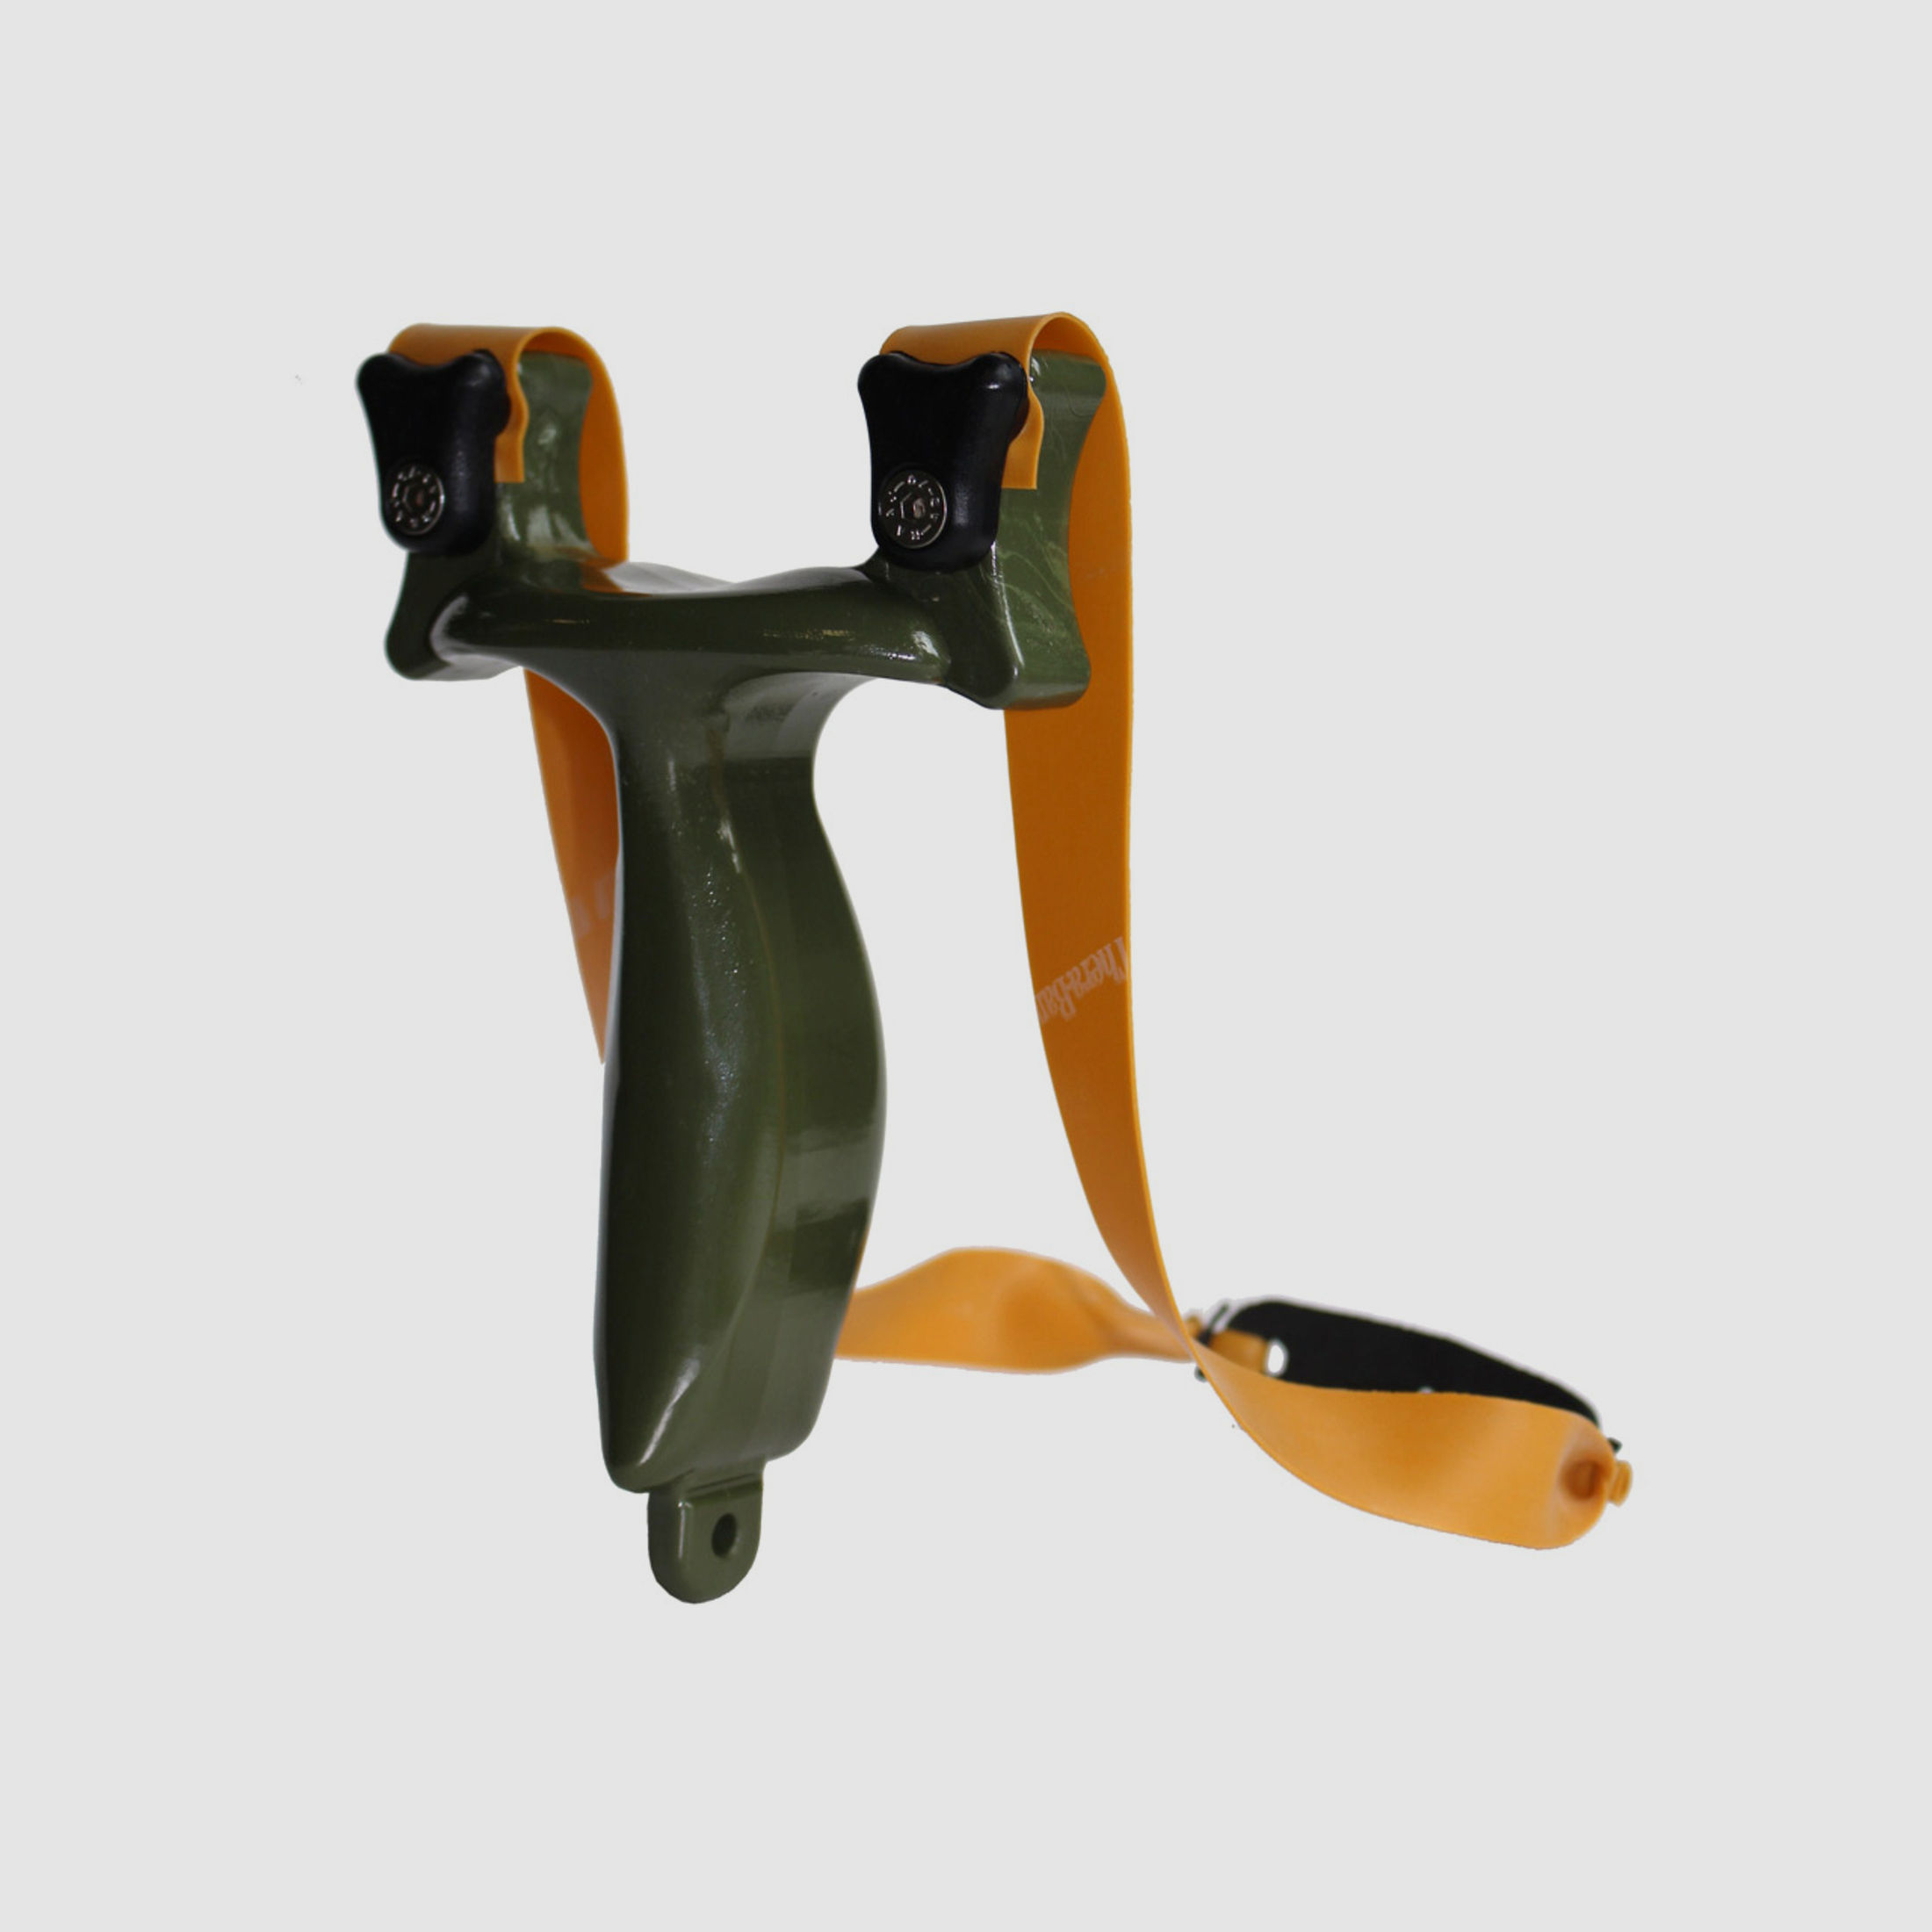 Sportschleuder Zwille Slingshot RAMbone 2.0 oliv - TBG-Single Kit mit Ersatzband und 100 Kugeln 8 mm (P18)